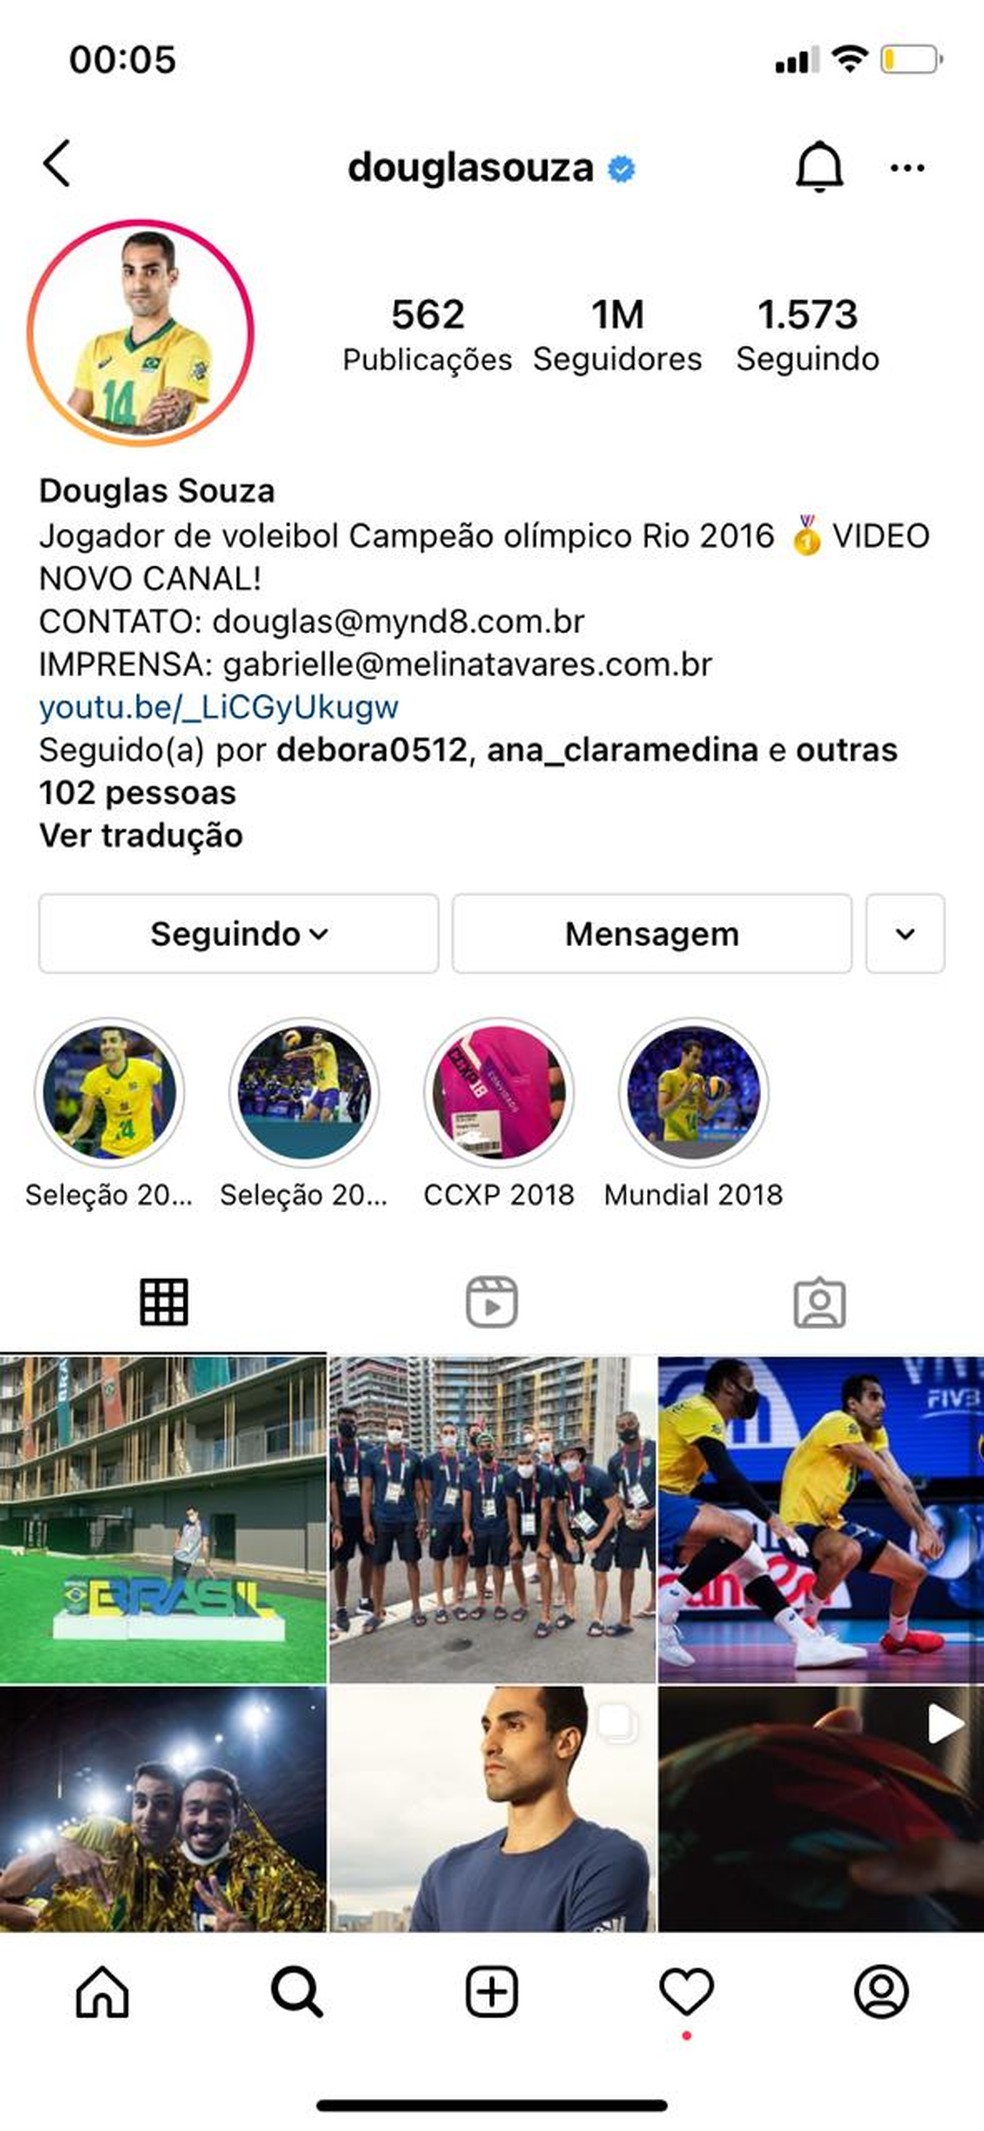 Com 2 milhões de seguidores, atleta Douglas Souza faz sucesso no Instagram